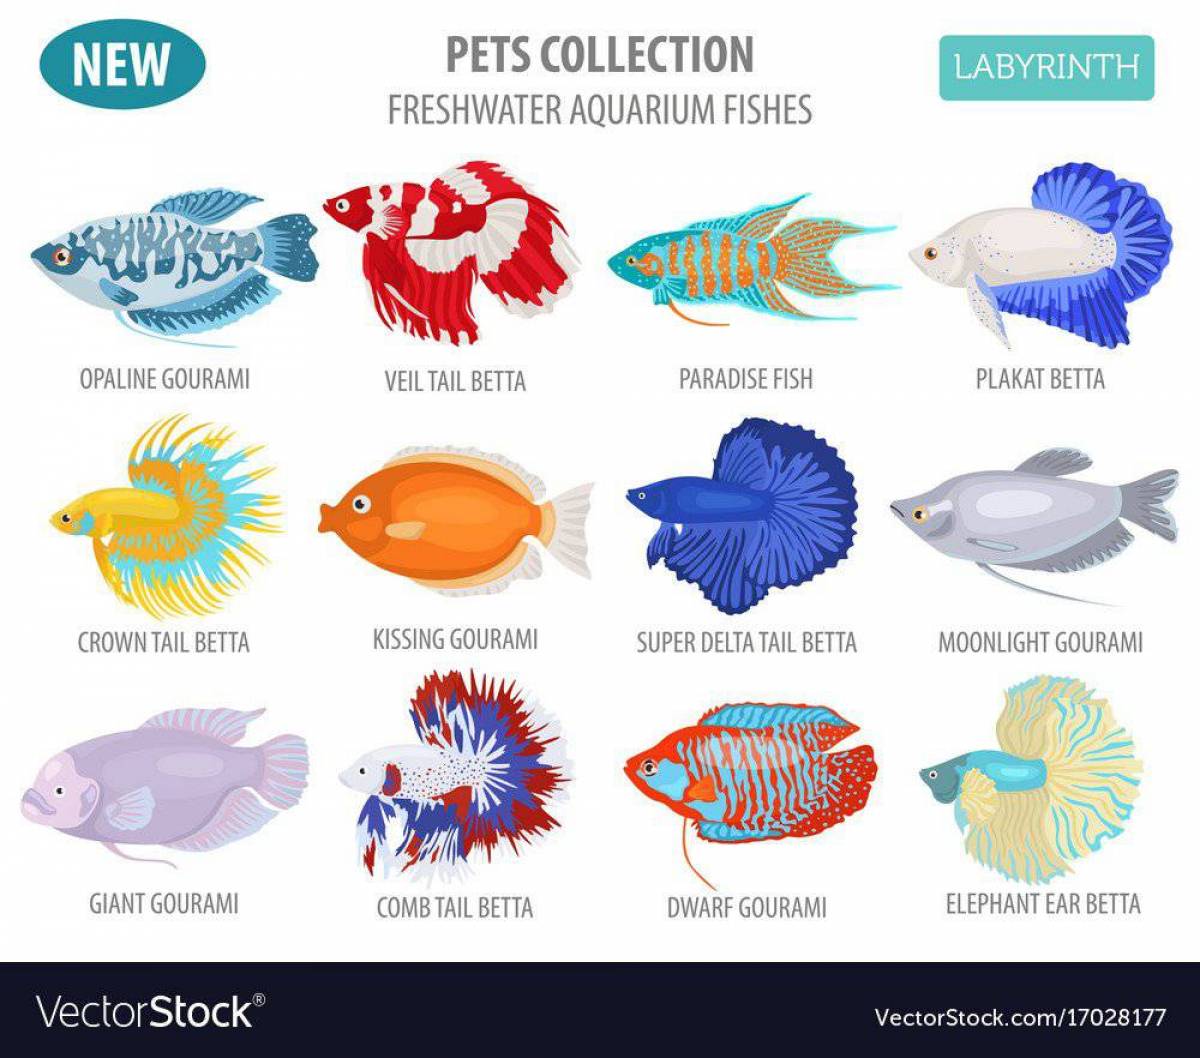 Аквариумные рыбки с названиями для детей #24